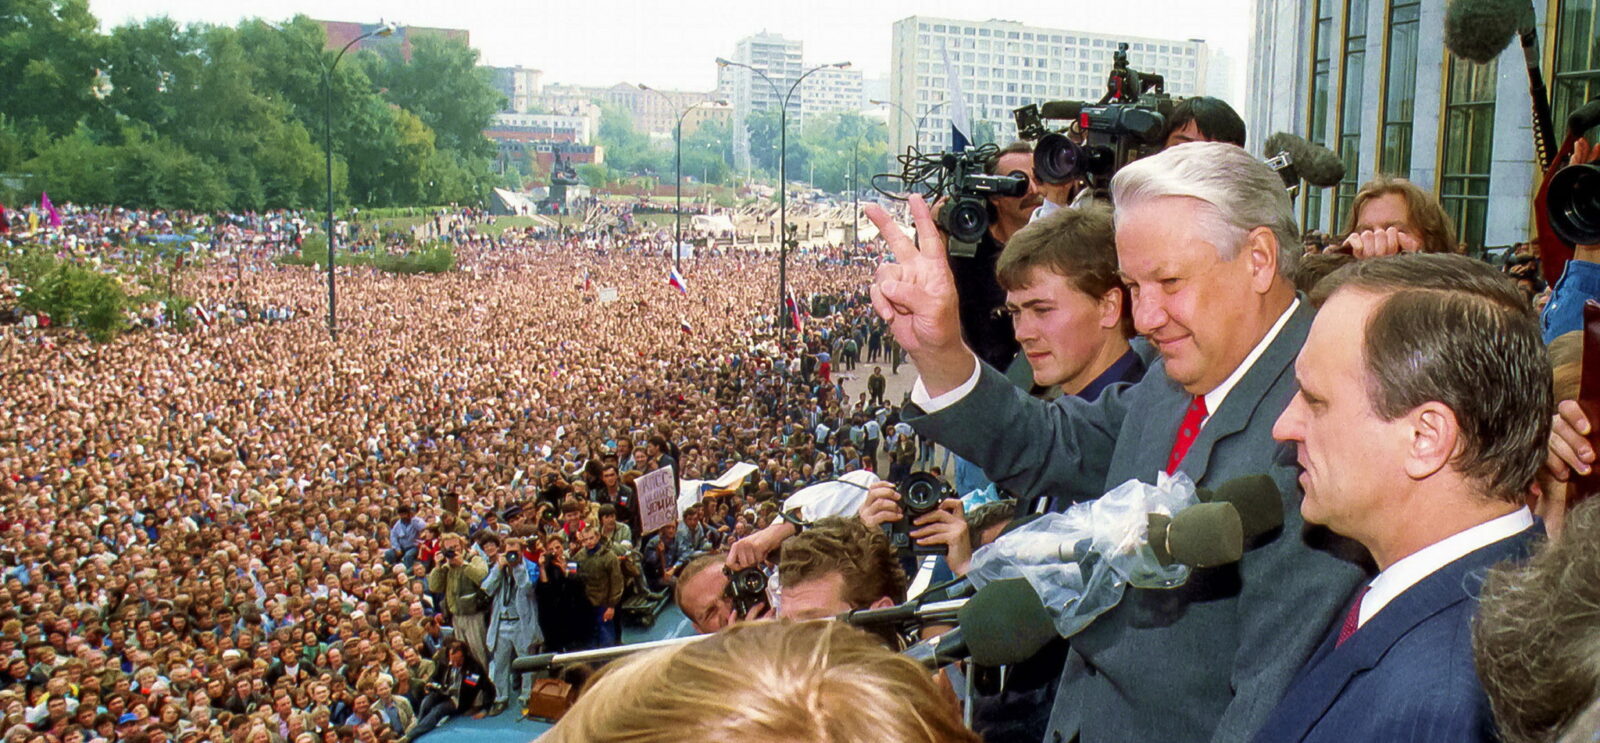 Борис Ельцин и начало его ельцинизма в России